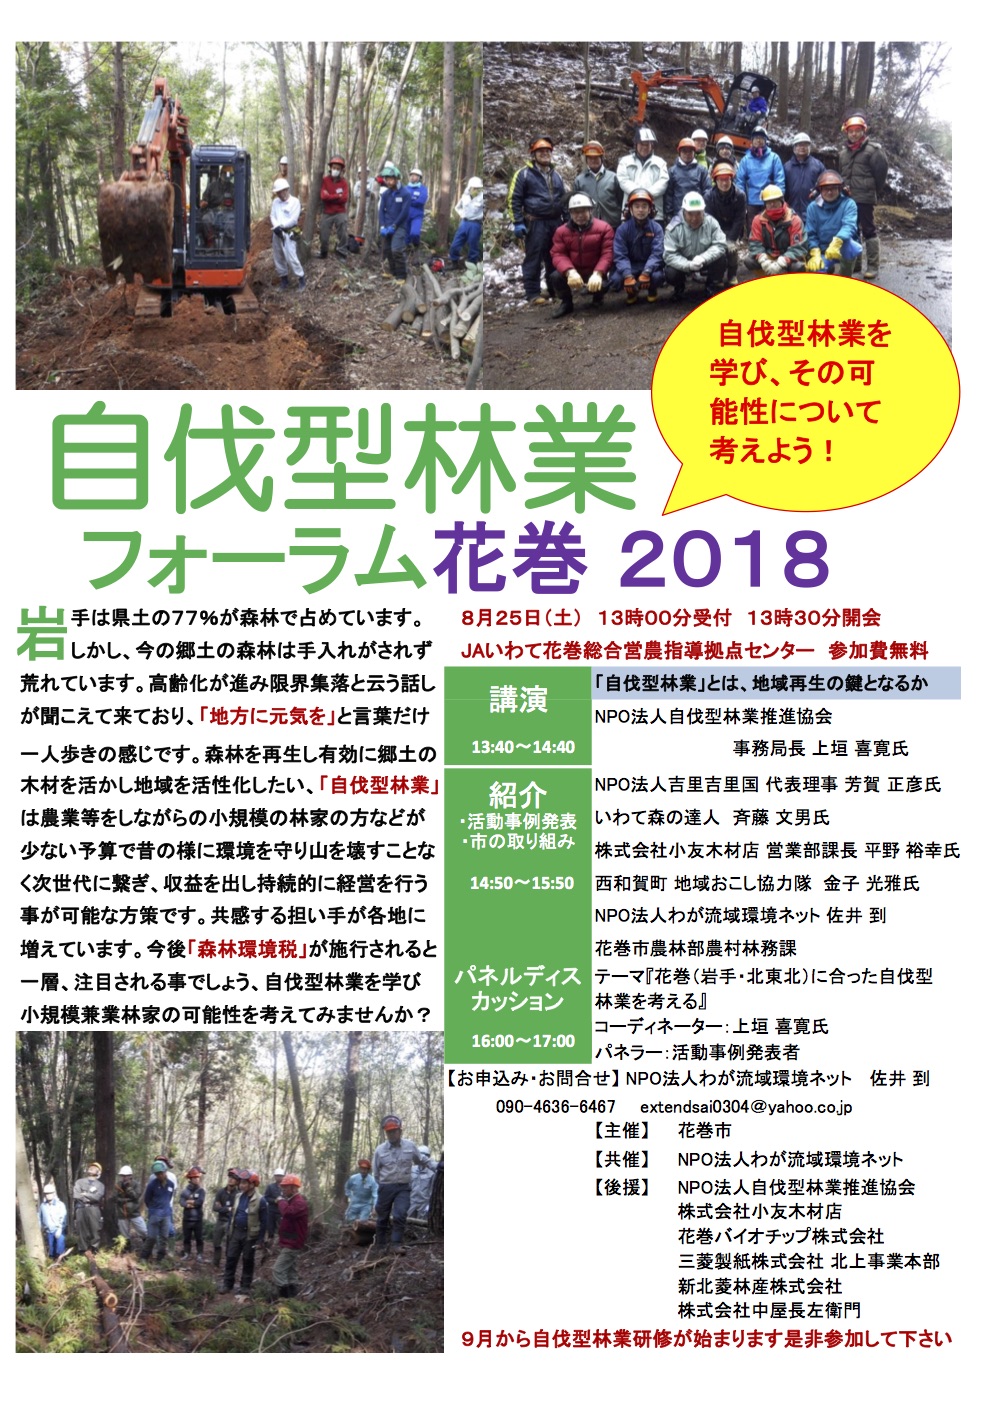 岩手県花巻市で8月25日に「自伐型林業フォーラム花巻 2018」が開催されます。